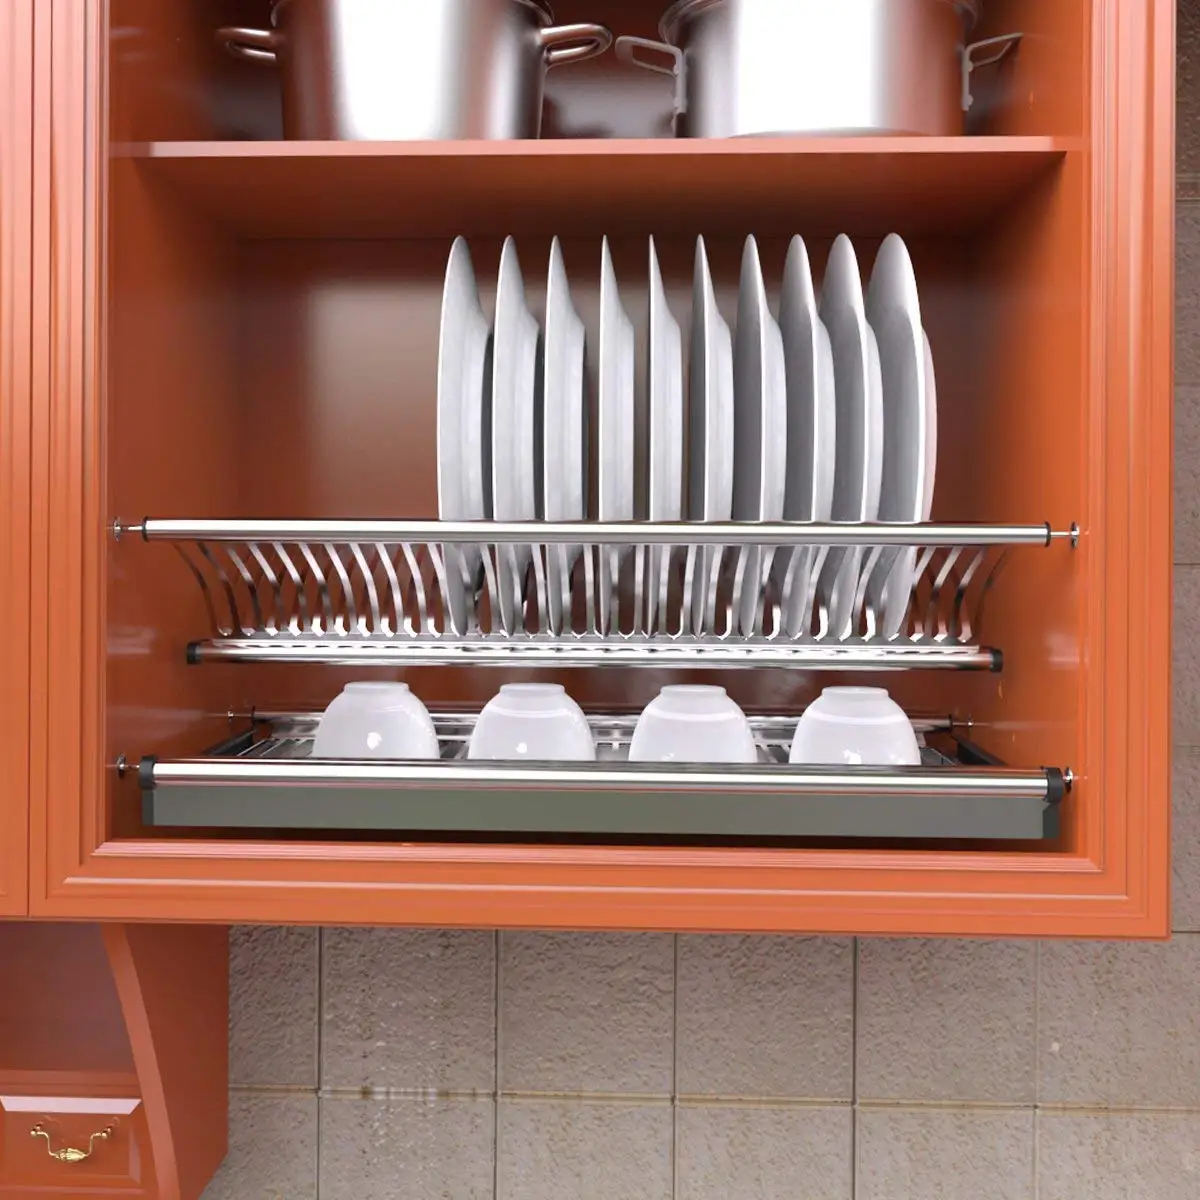 металлическая полка для посуды в шкаф